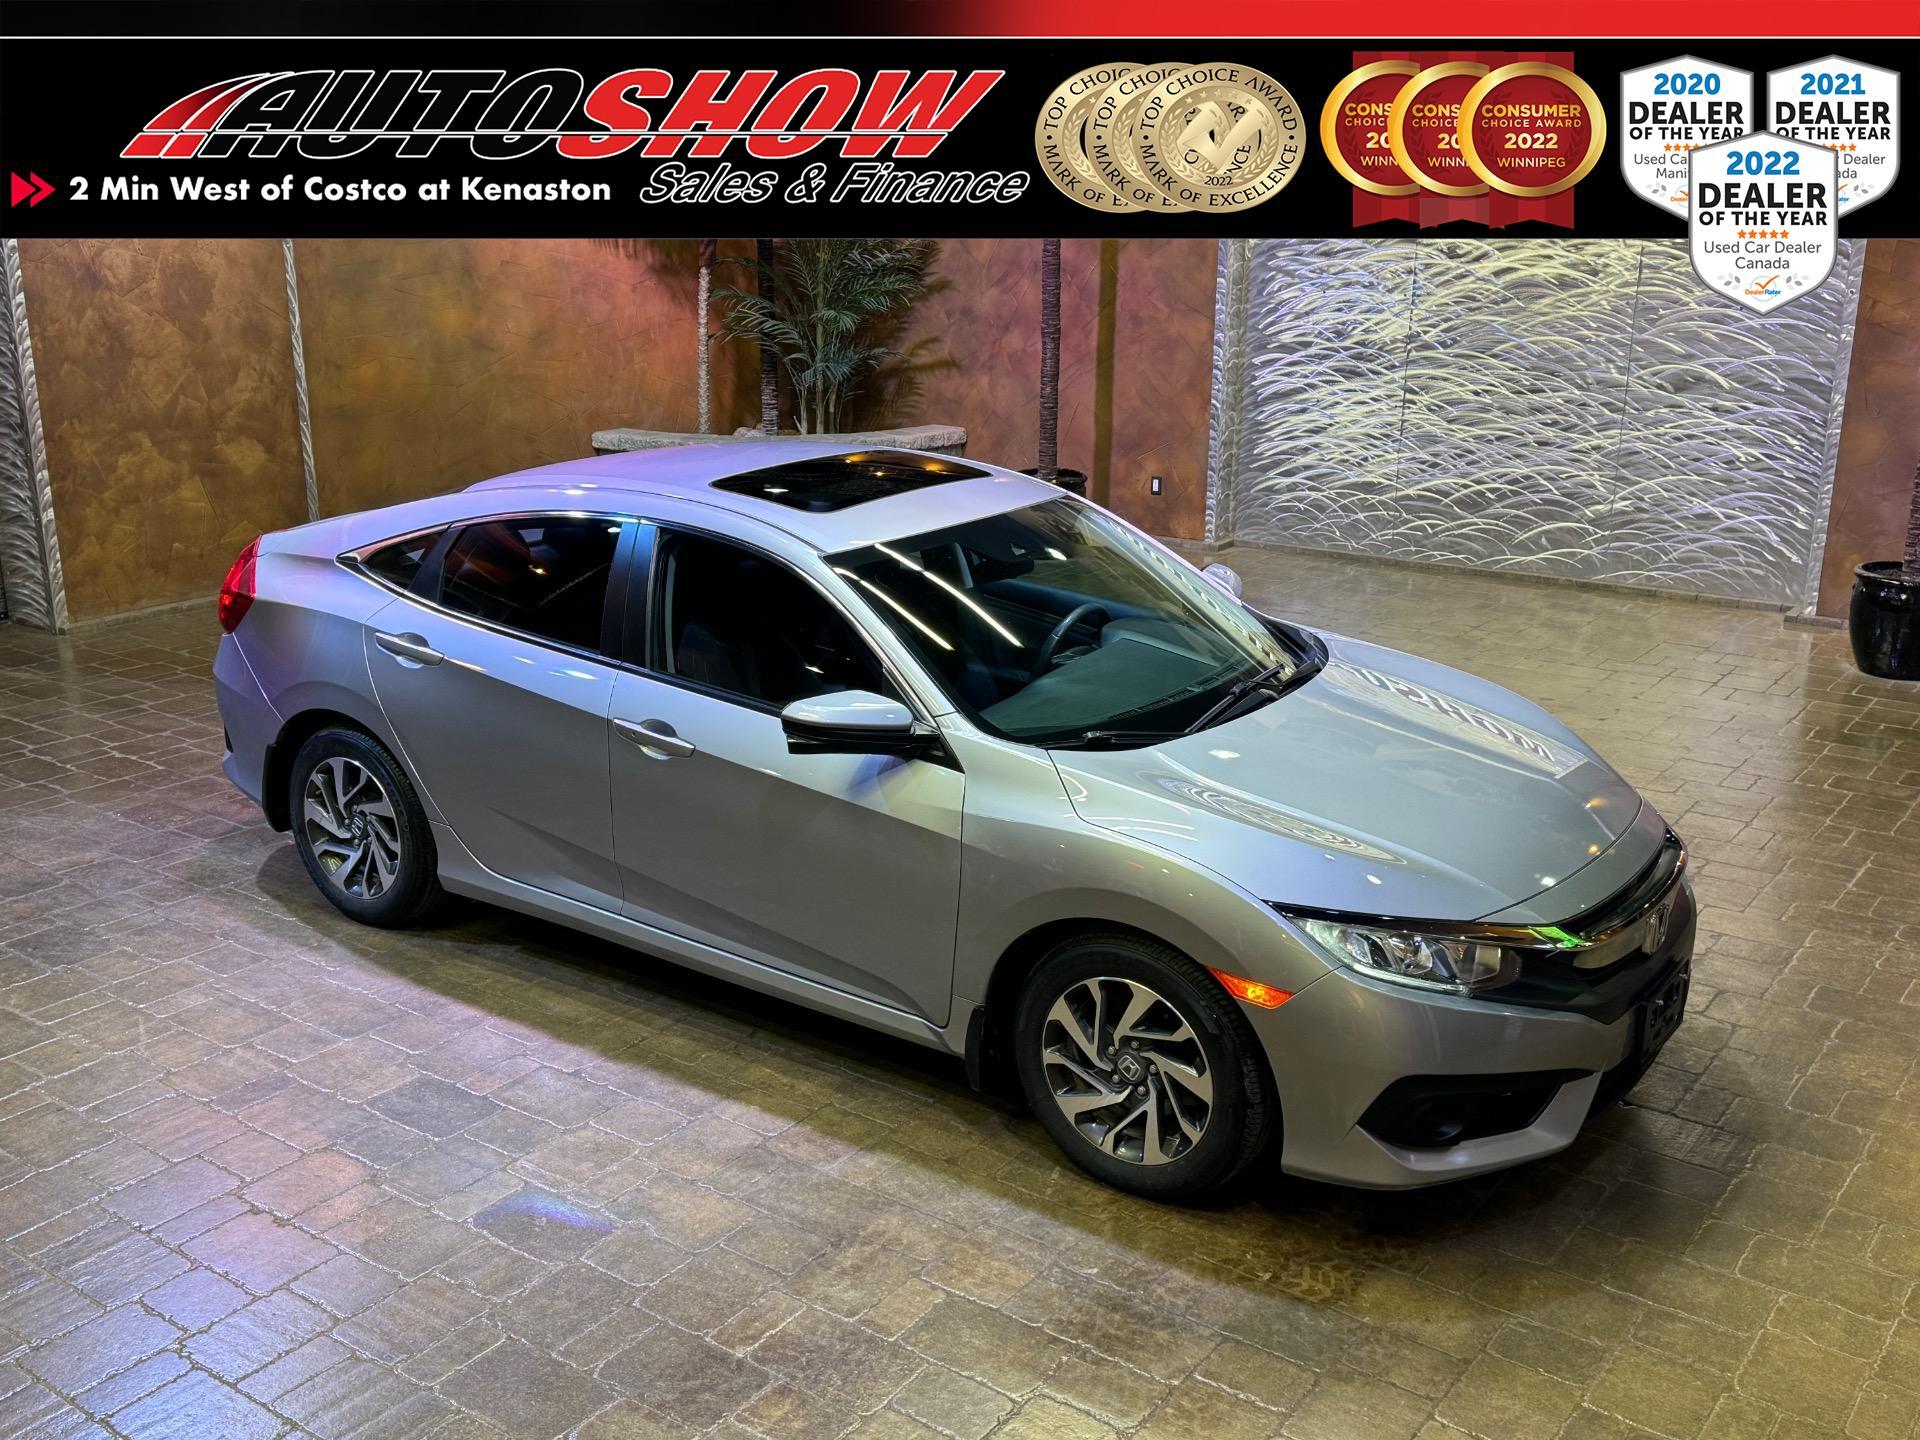 2017 Honda Civic Sedan EX - Sunroof, Heated Seats, Adptv Cruise, CarPlay!